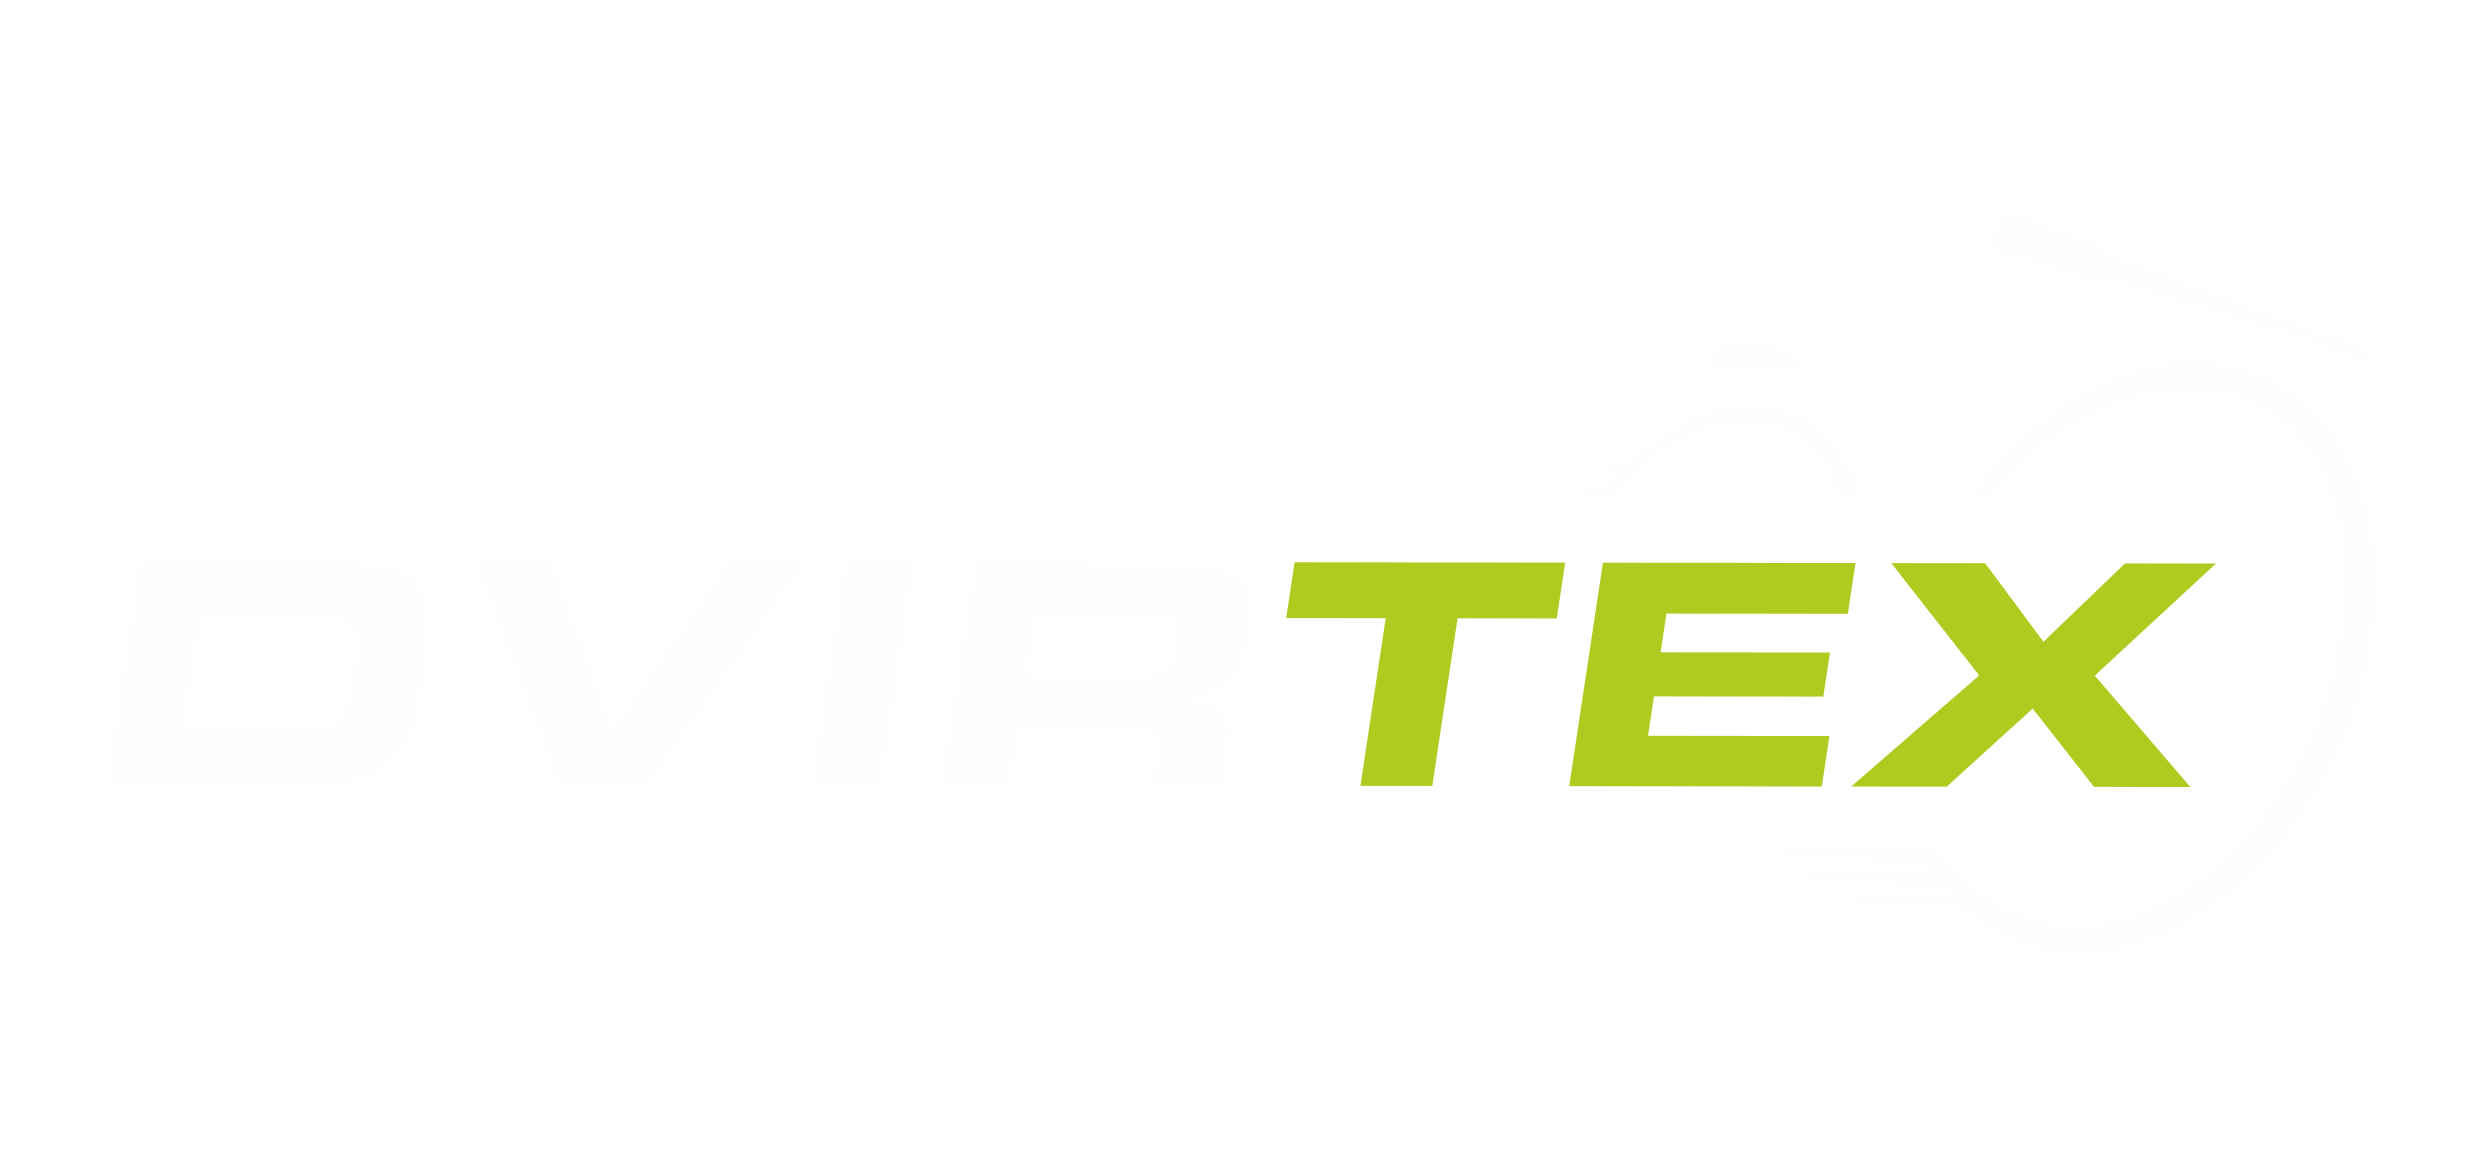 dvirtex logo